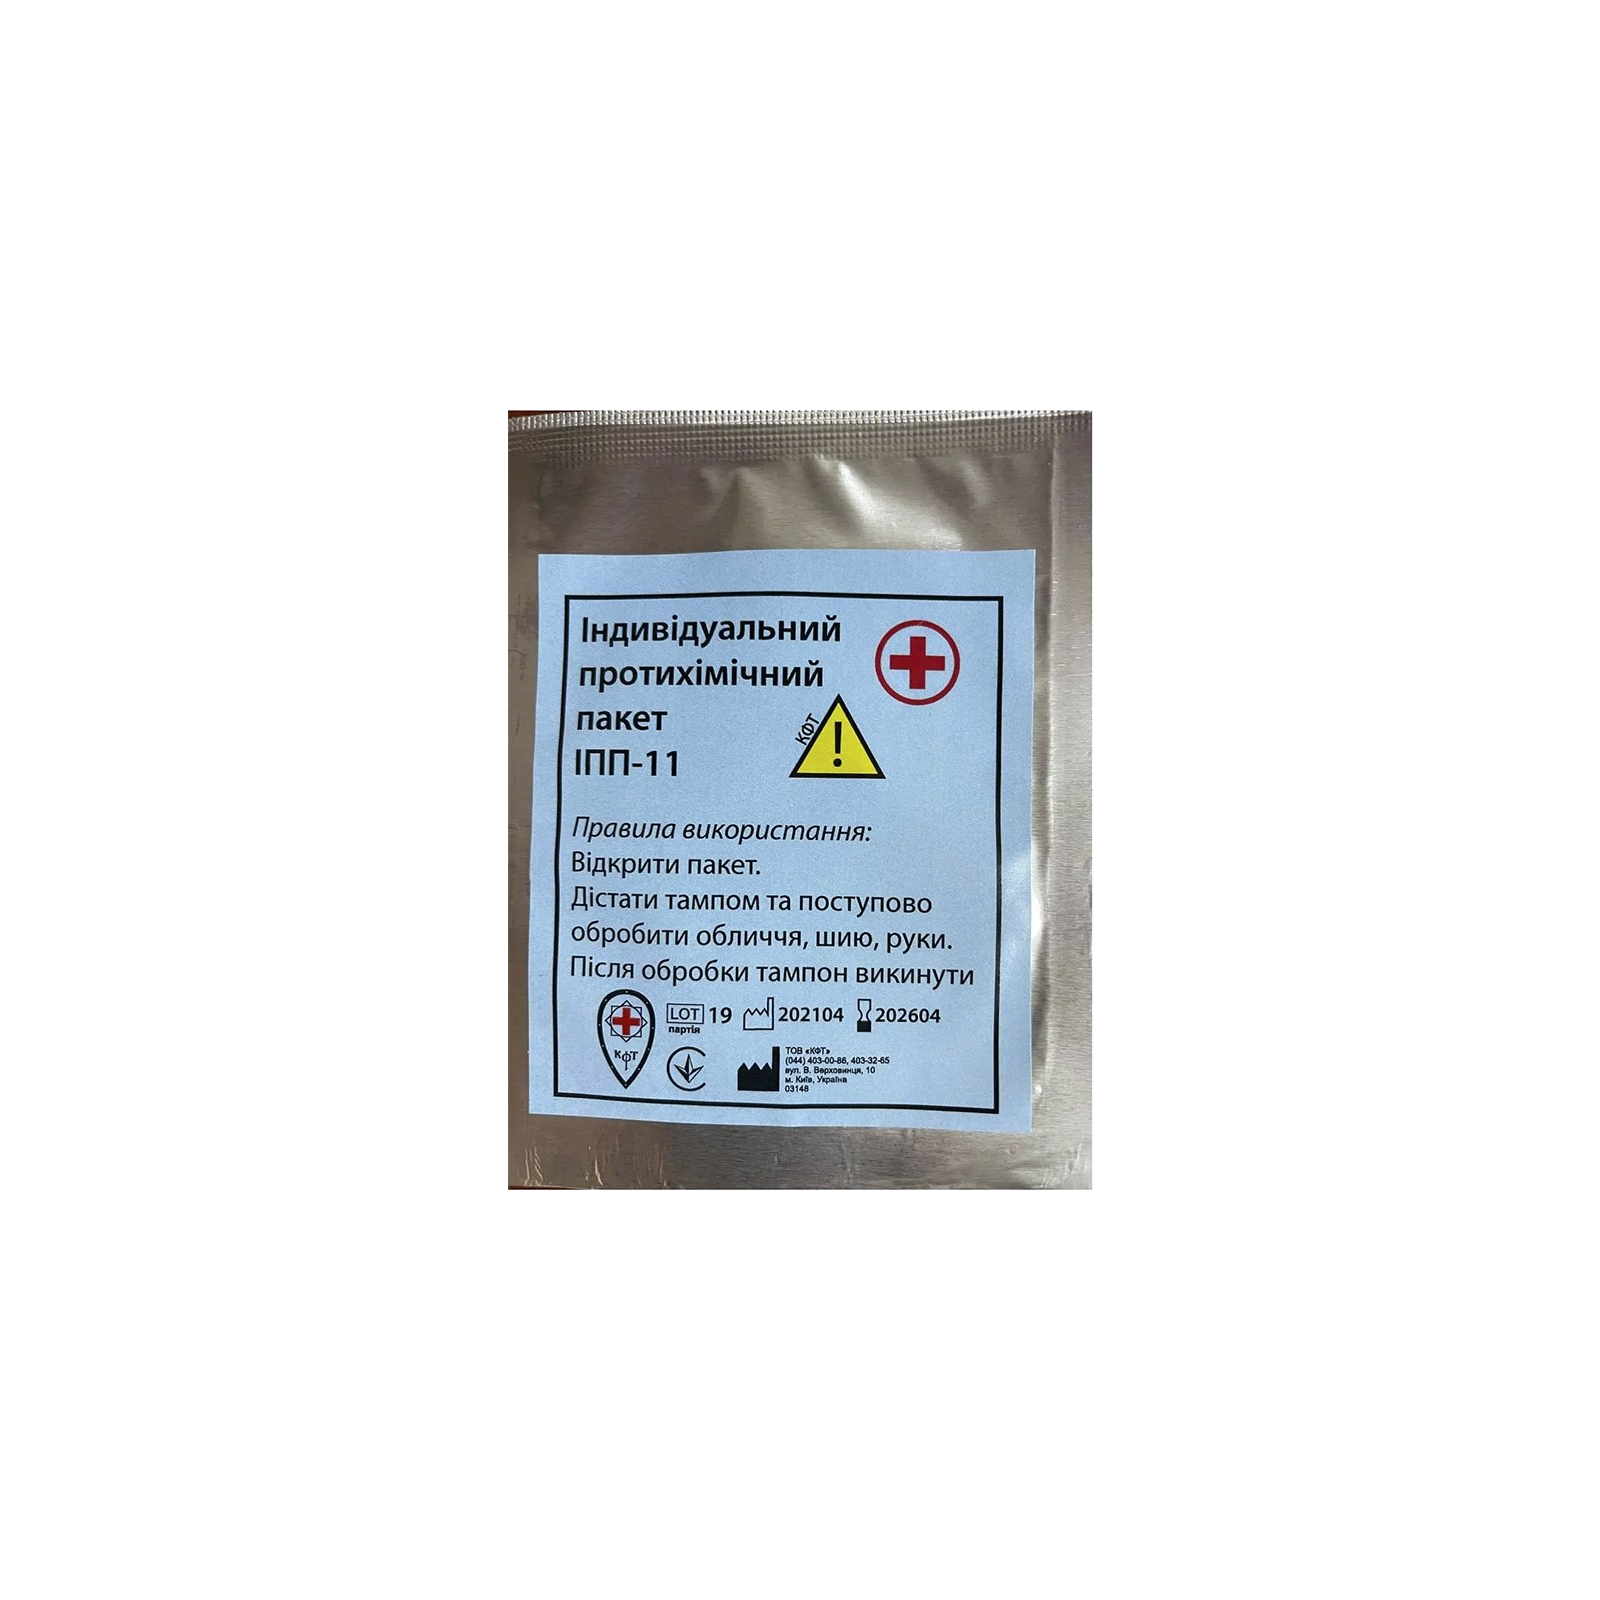 Пакет индивидуальный противохимический КФТ тип ІПП-11 (51-033-P)